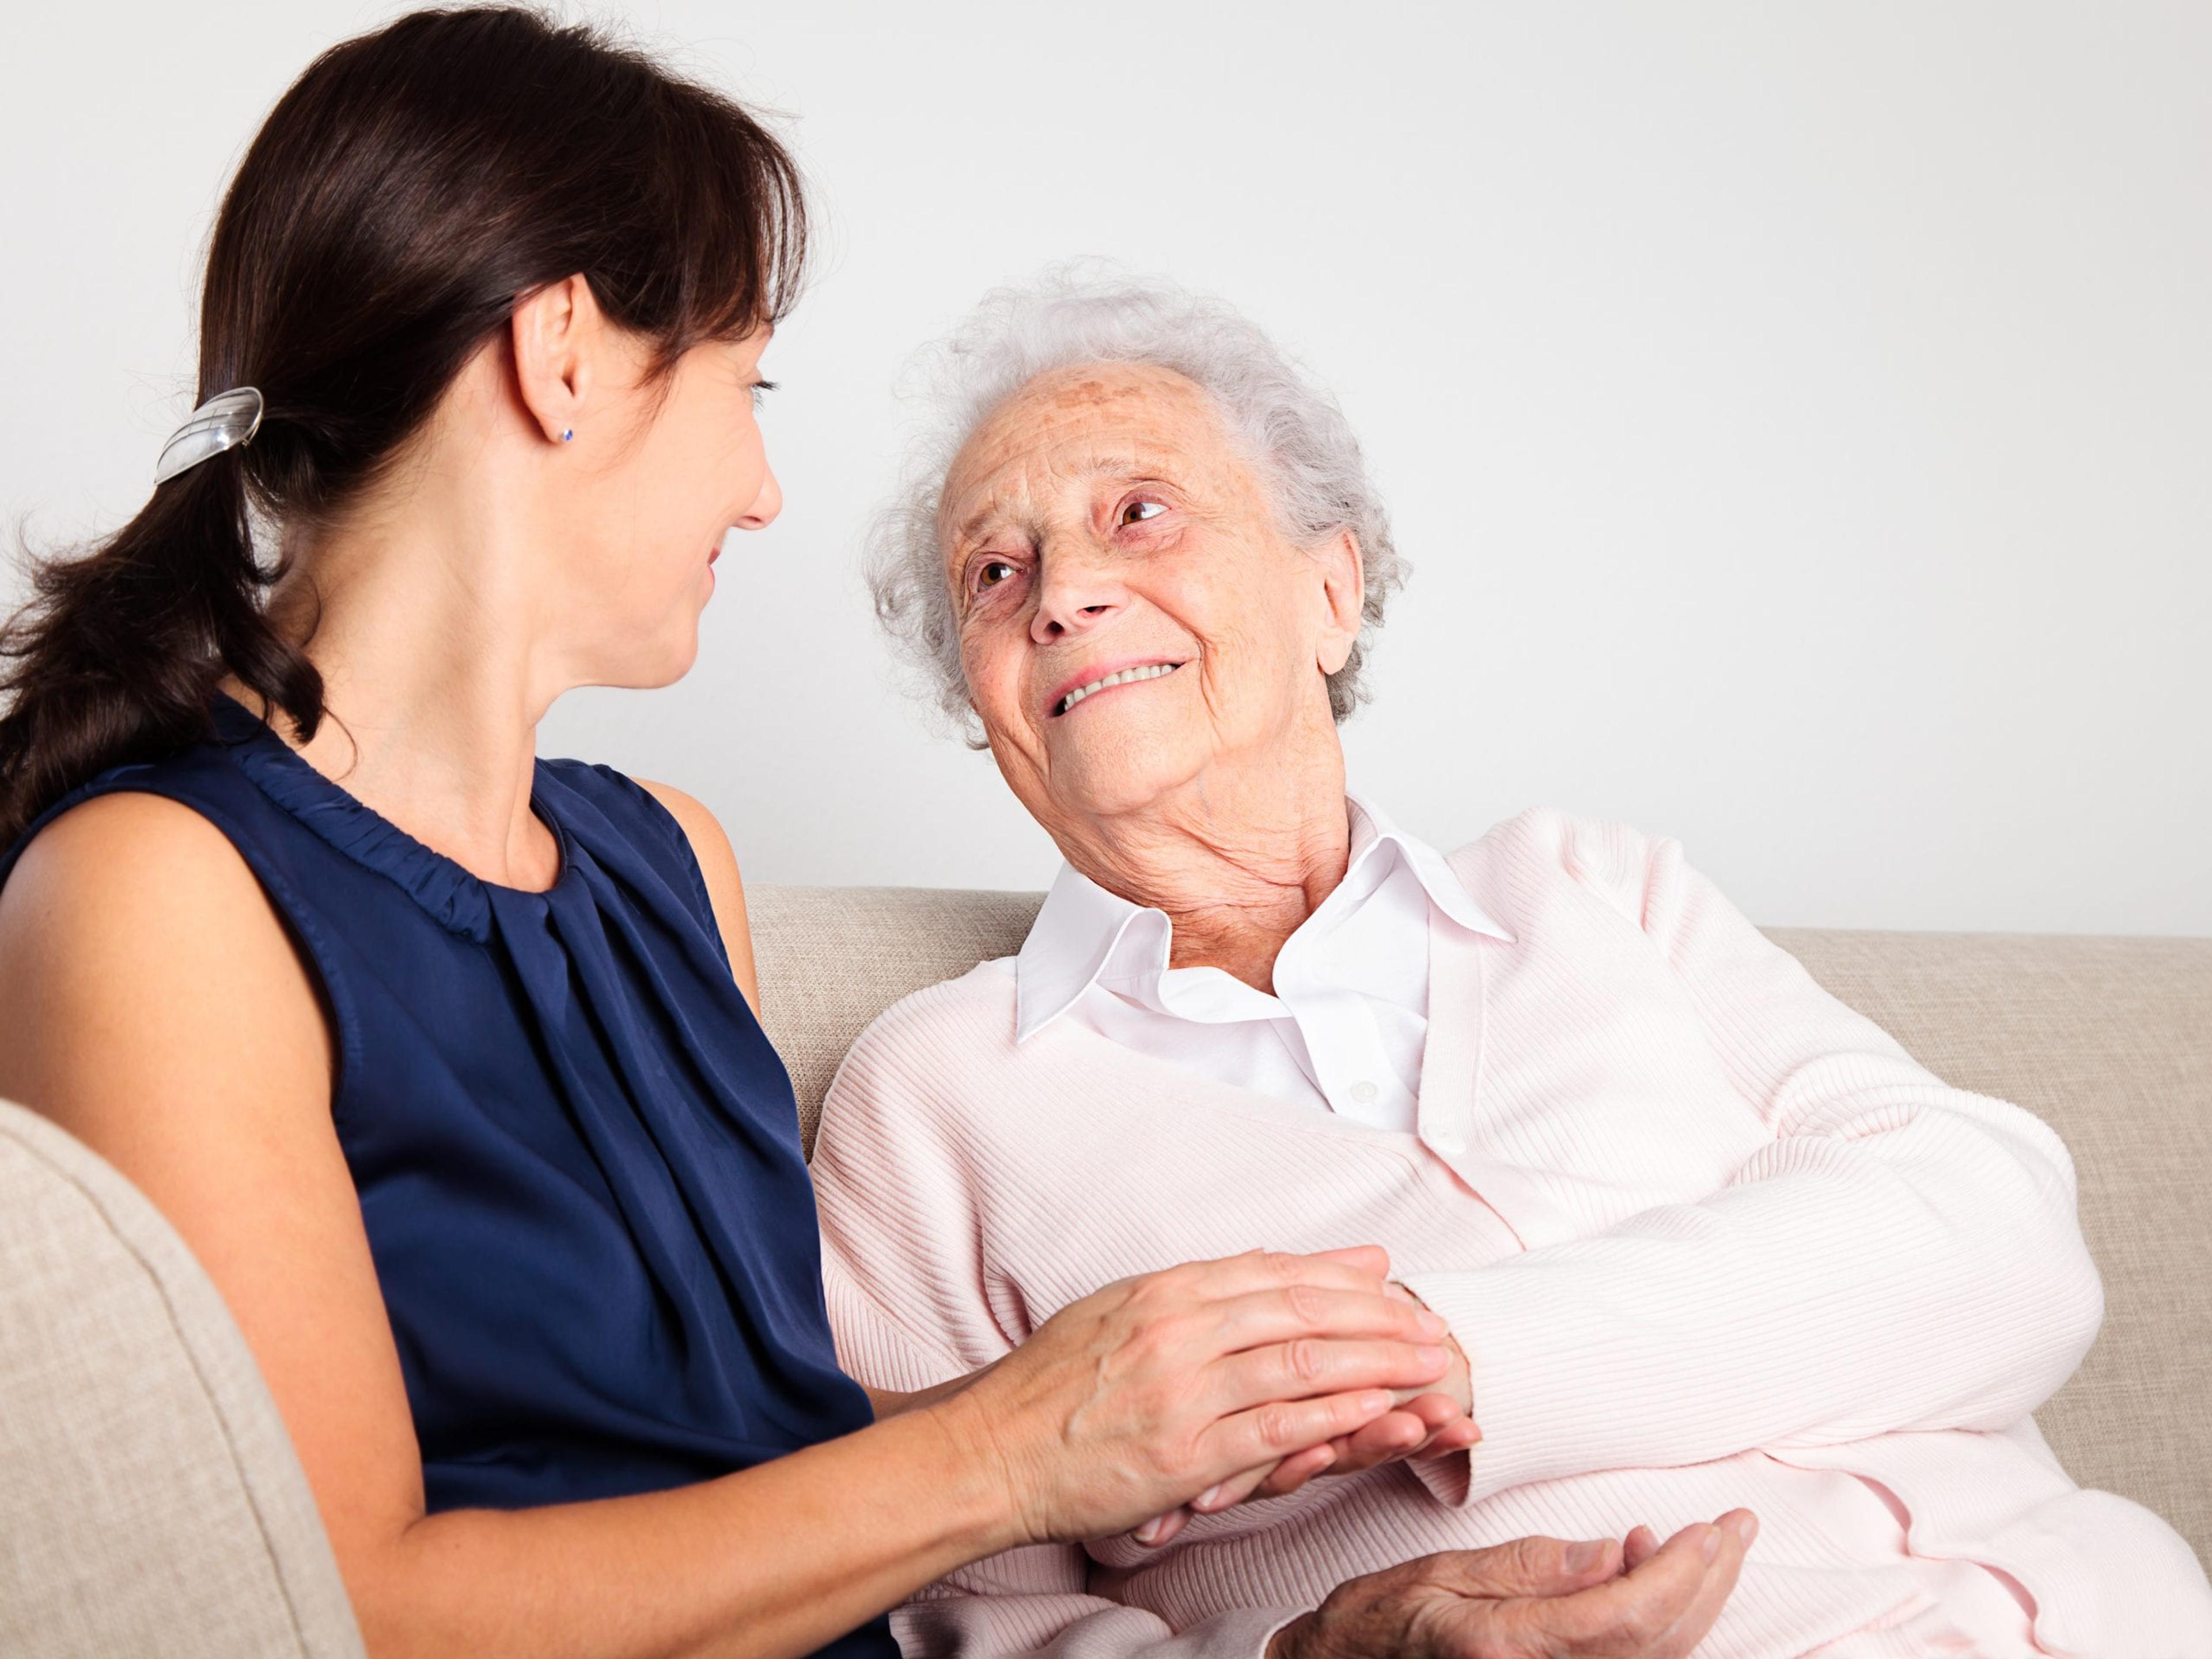 Старческая деменция это. Общение с пожилыми людьми. Пожилые люди. Общение с пожилым человеком. Разговор с пожилым человеком.